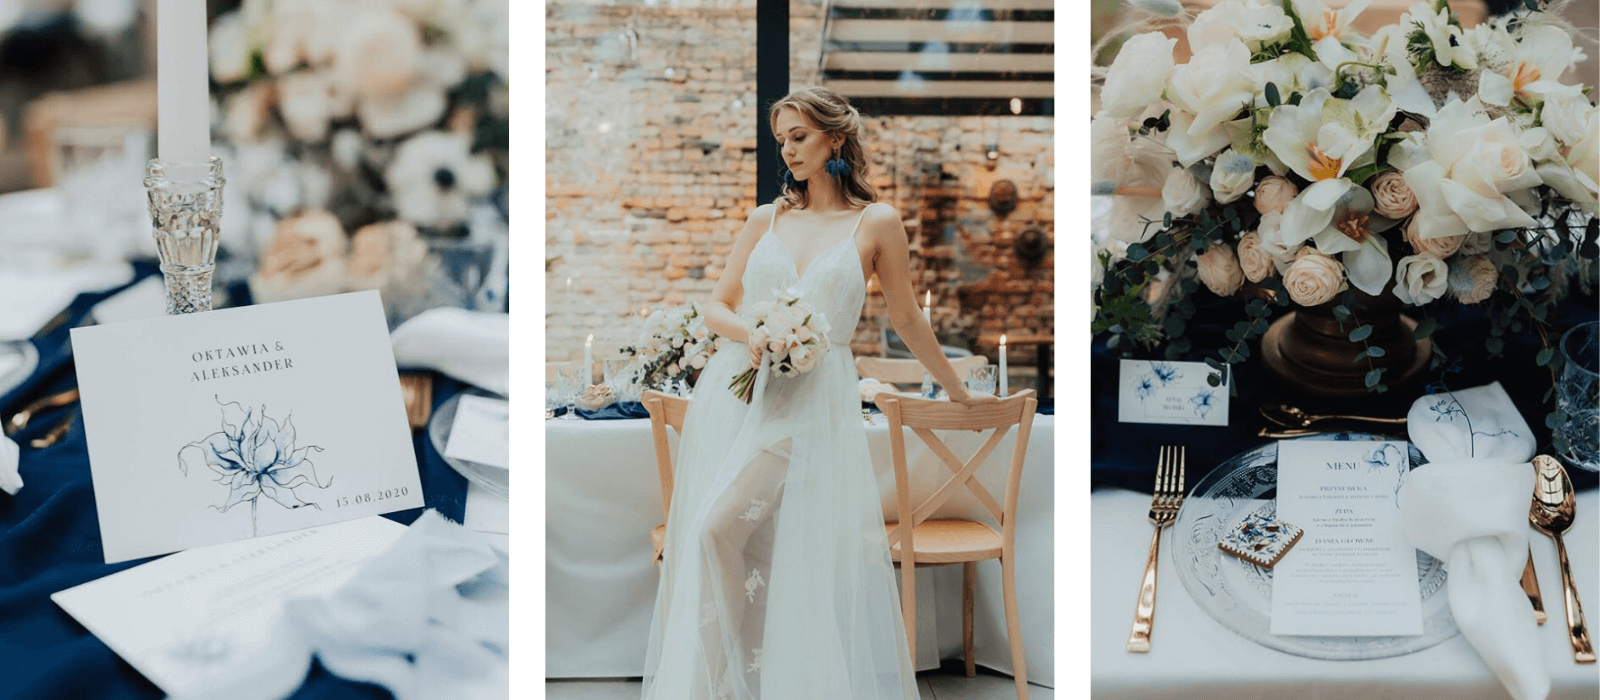 realizacje stylizowana sesja ślubna classic blue magazyn wesele design your wedding